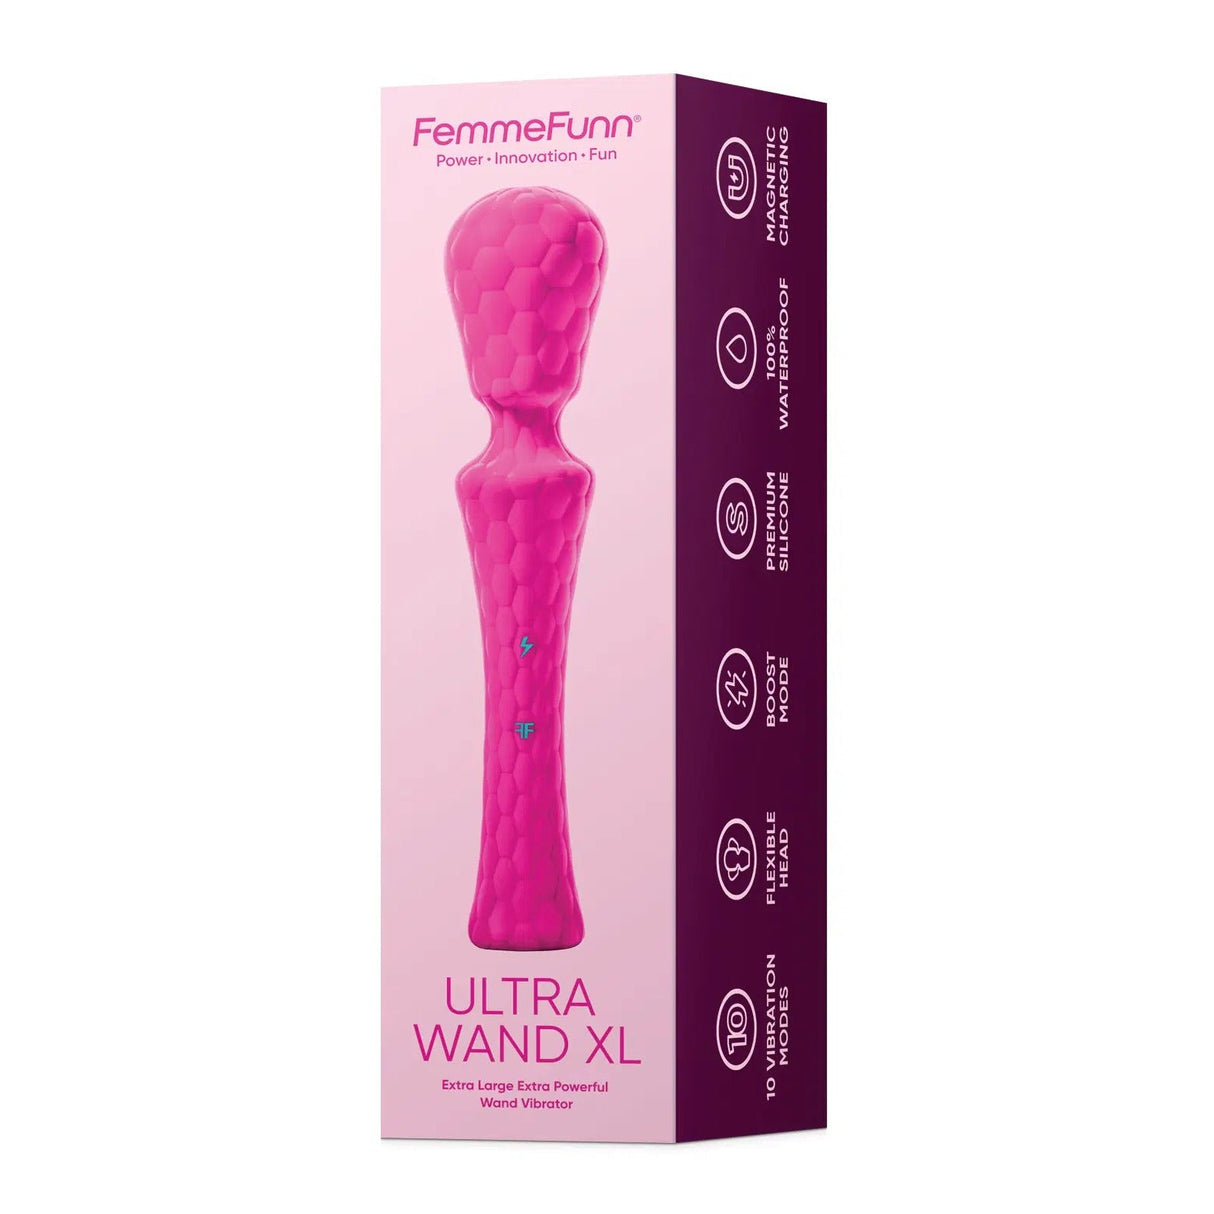 Femme Funn Ultra Wand XL Powerful Wand Vibrator